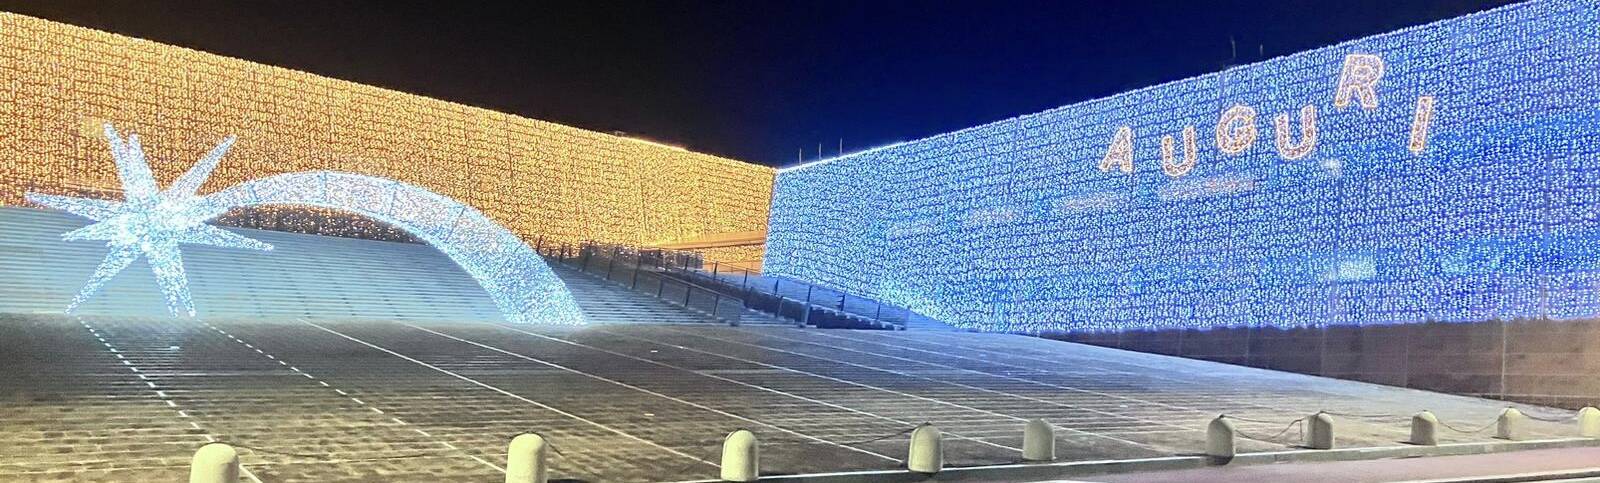 Fiumicino, il Palazzo comunale si rifà il look per Natale: luminarie e stella cometa